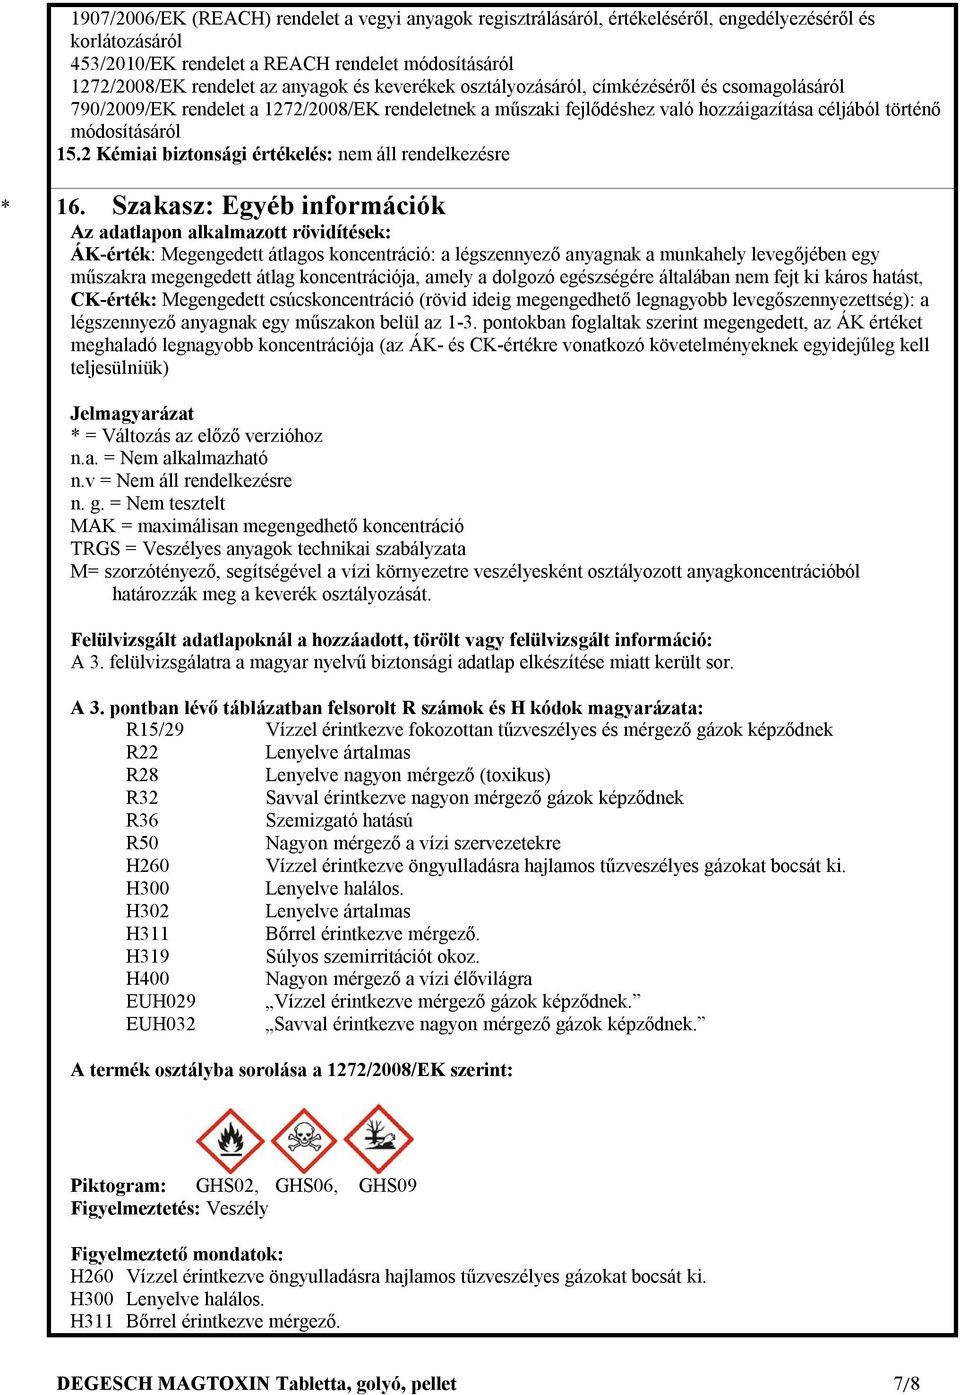 2 Kémiai biztonsági értékelés: nem áll rendelkezésre 16.